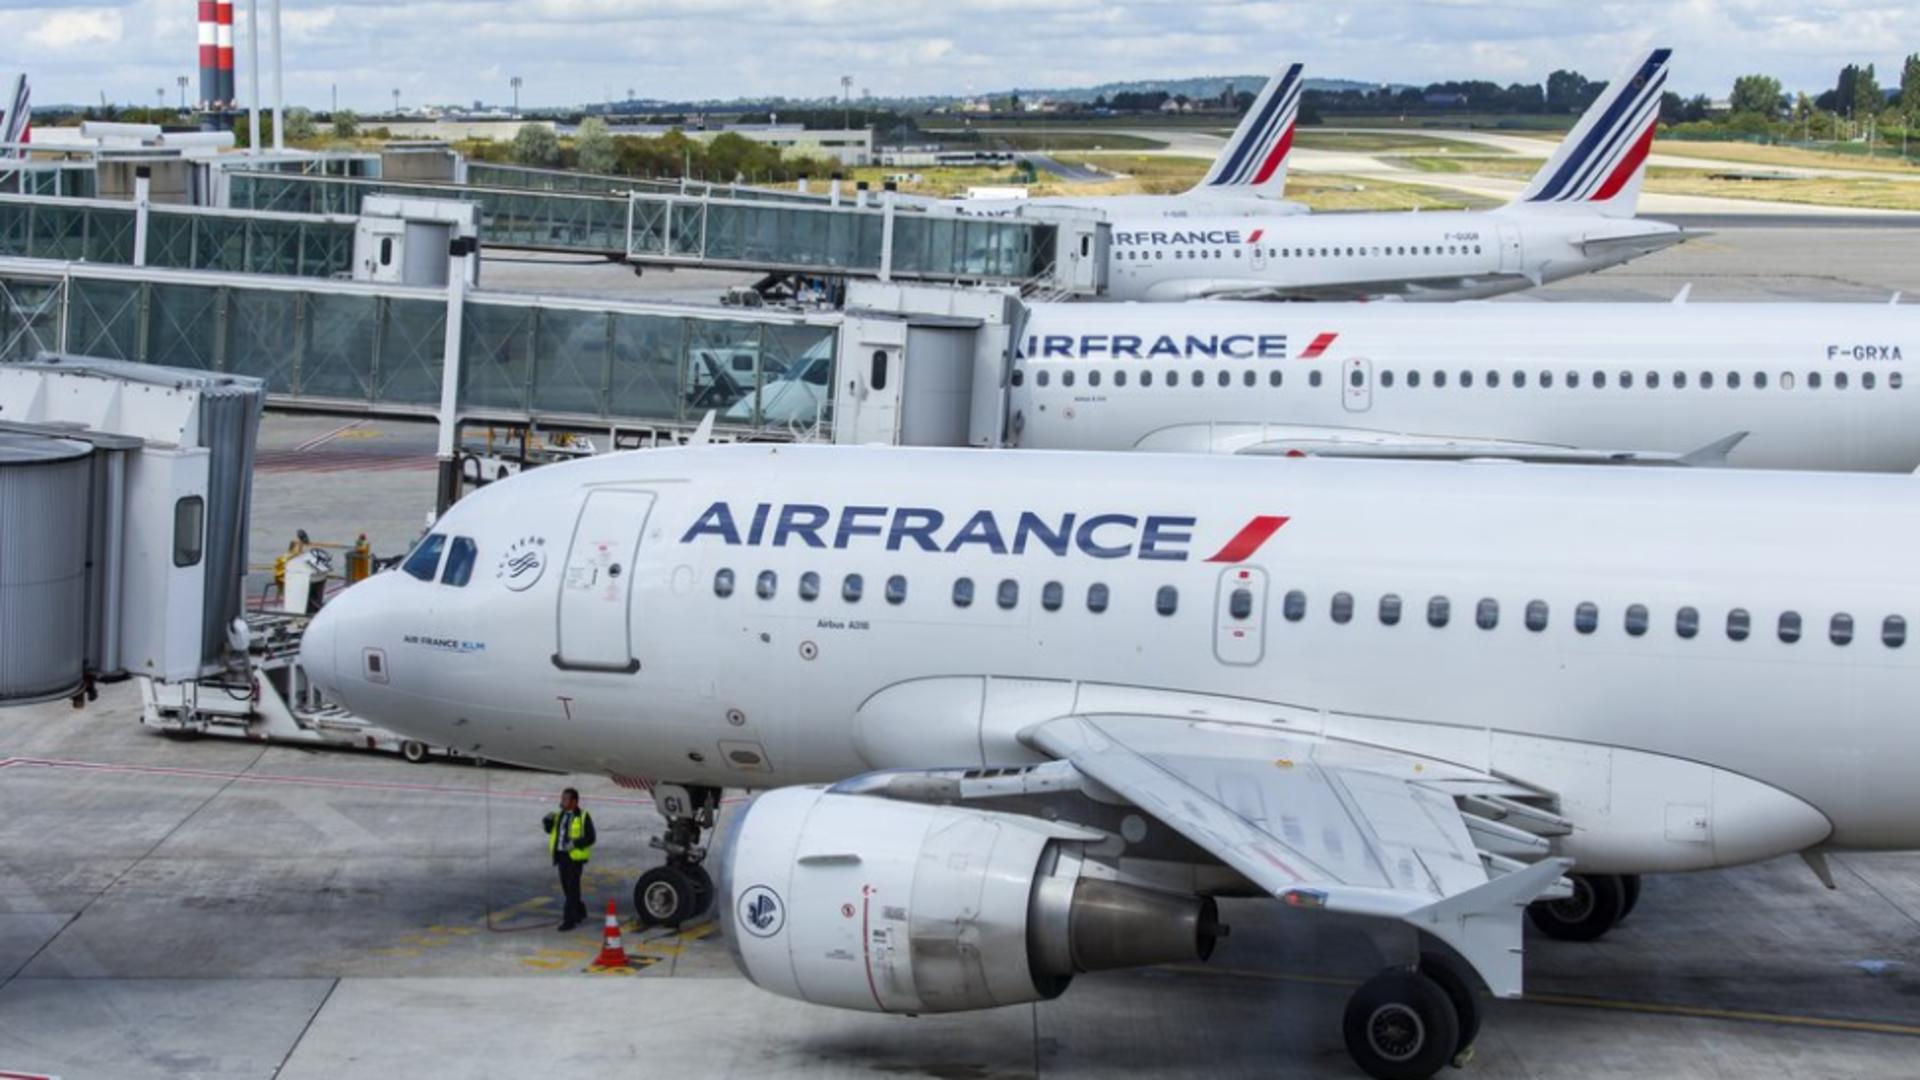 Alertă teroristă maximă în Franța - 4 aeroporturi evacuate de urgență după amenințări cu bombă